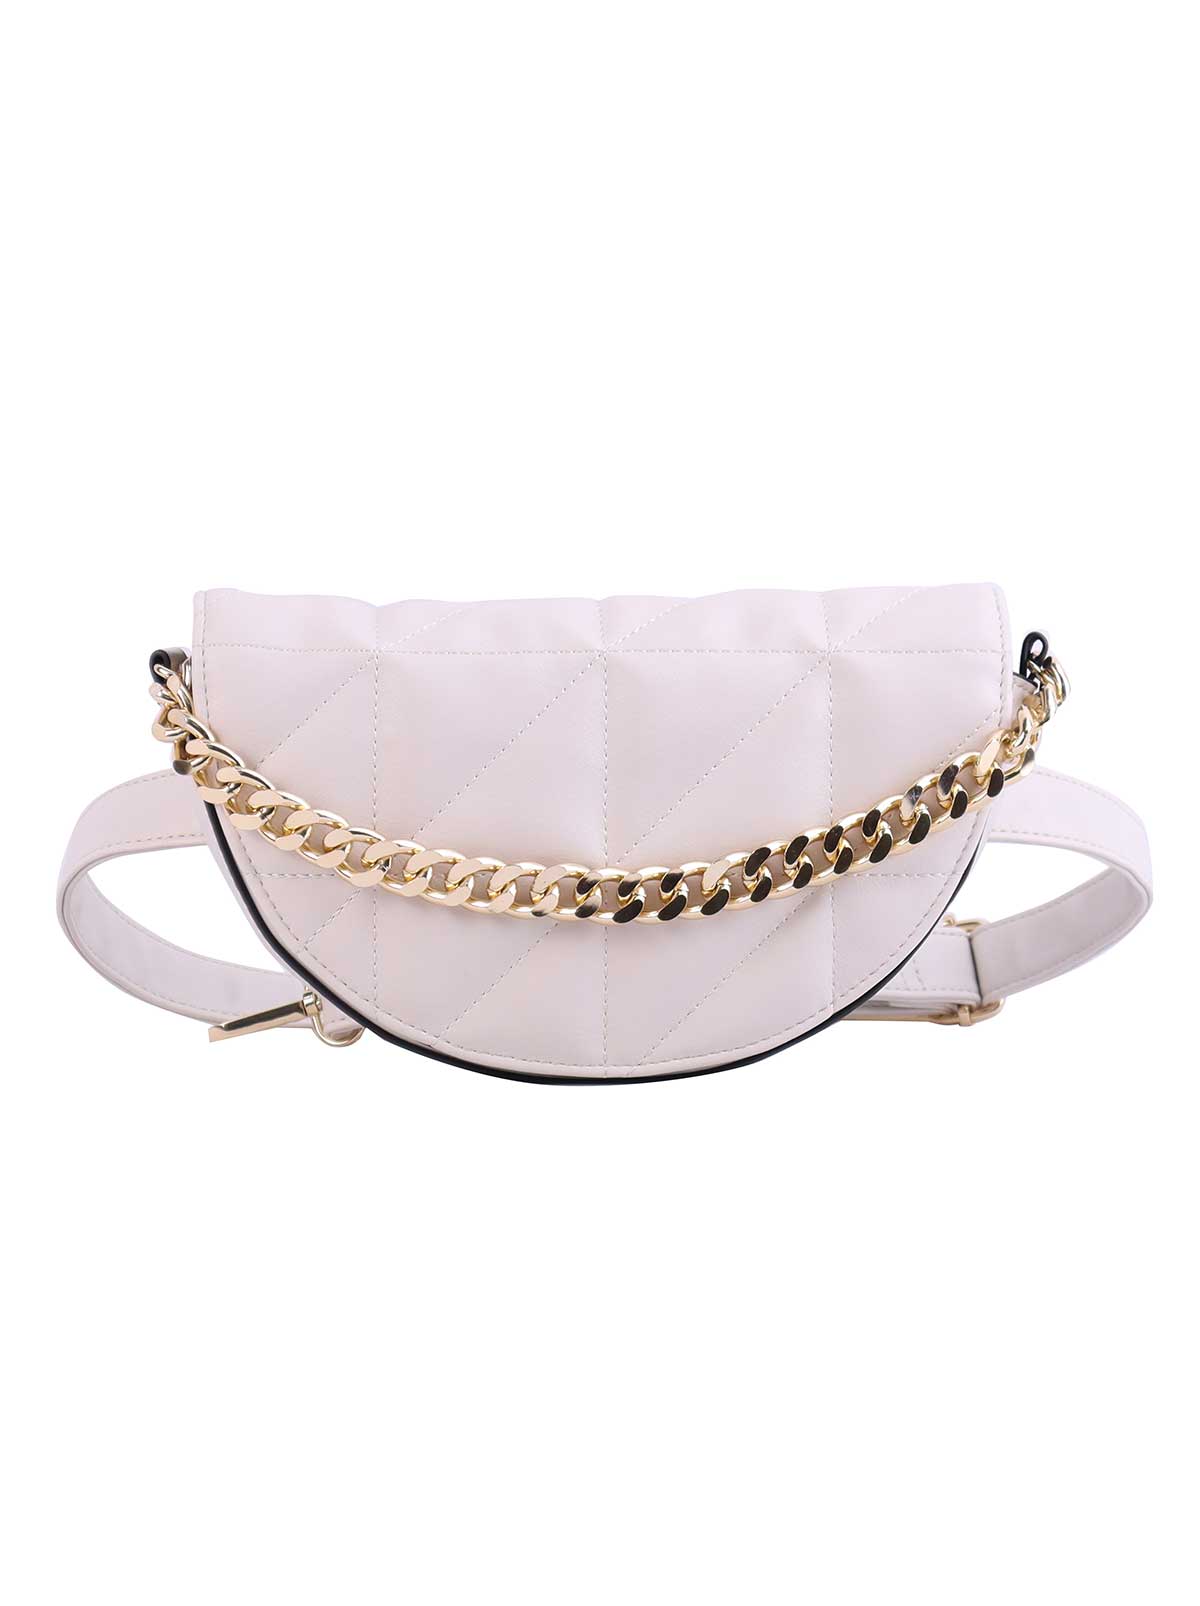 new chanel belt bag white